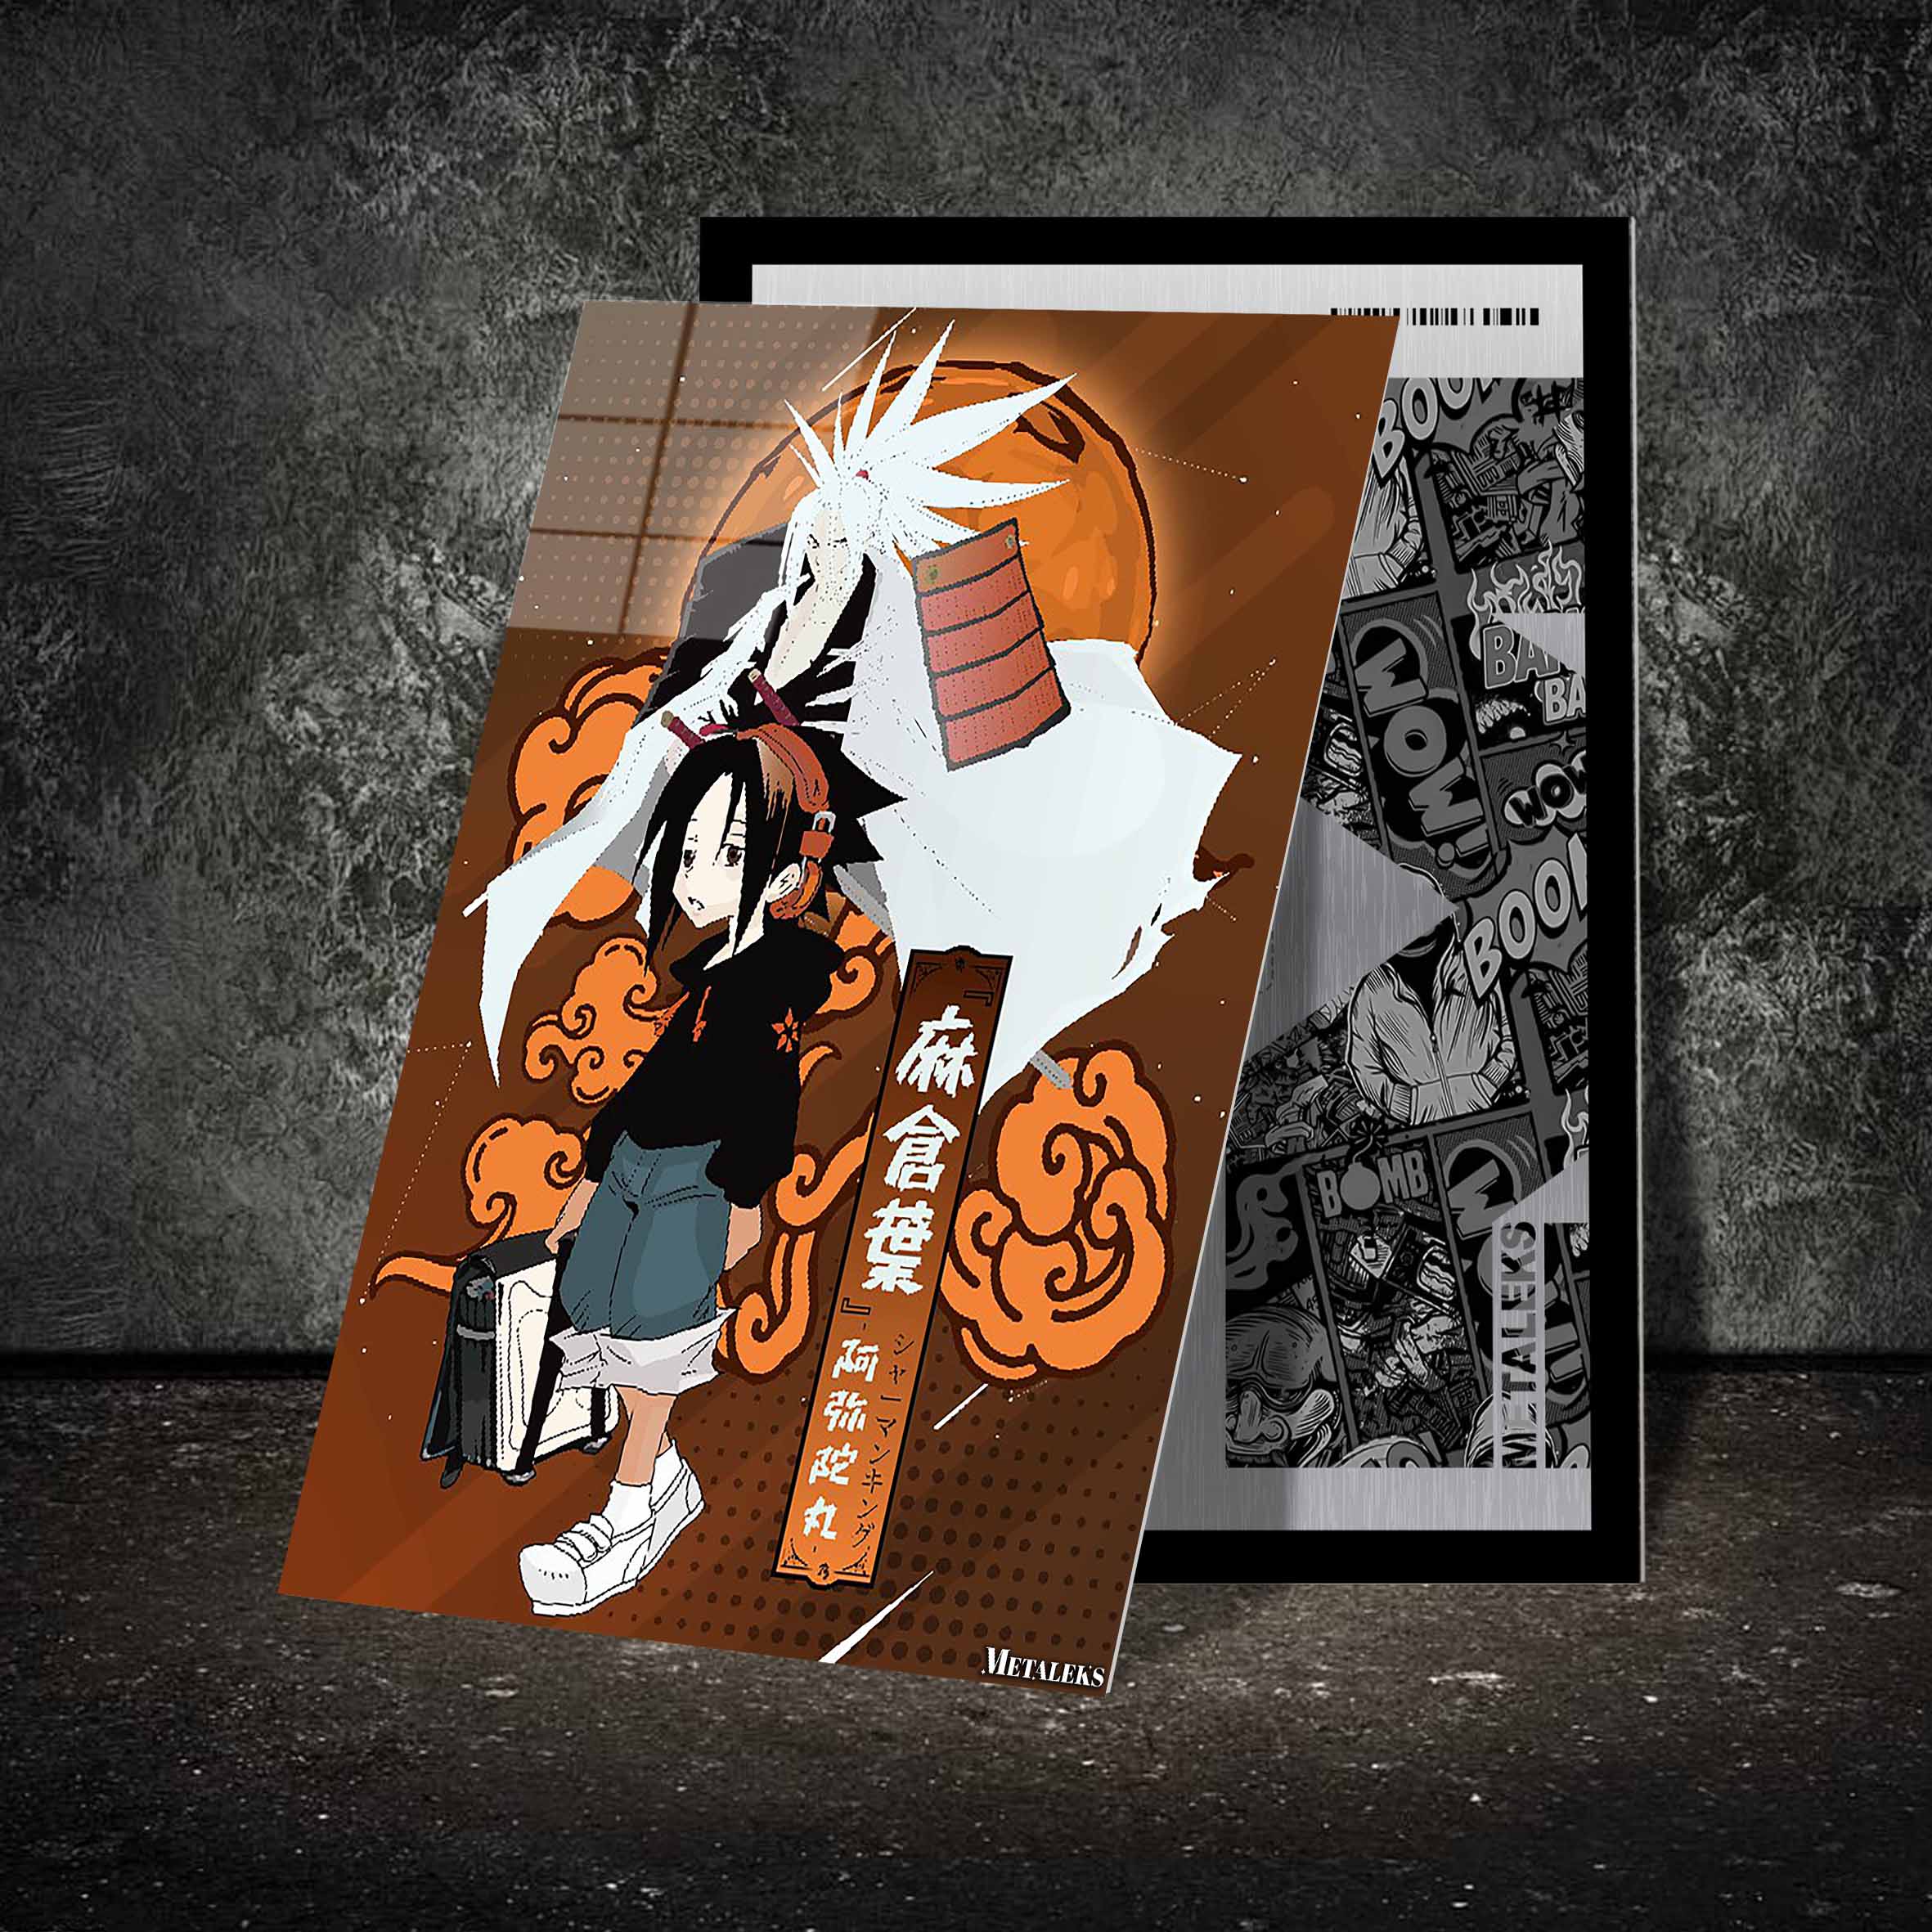 Shaman King - Yoh X Amidamaru-designed by @ReelAnimeDragon